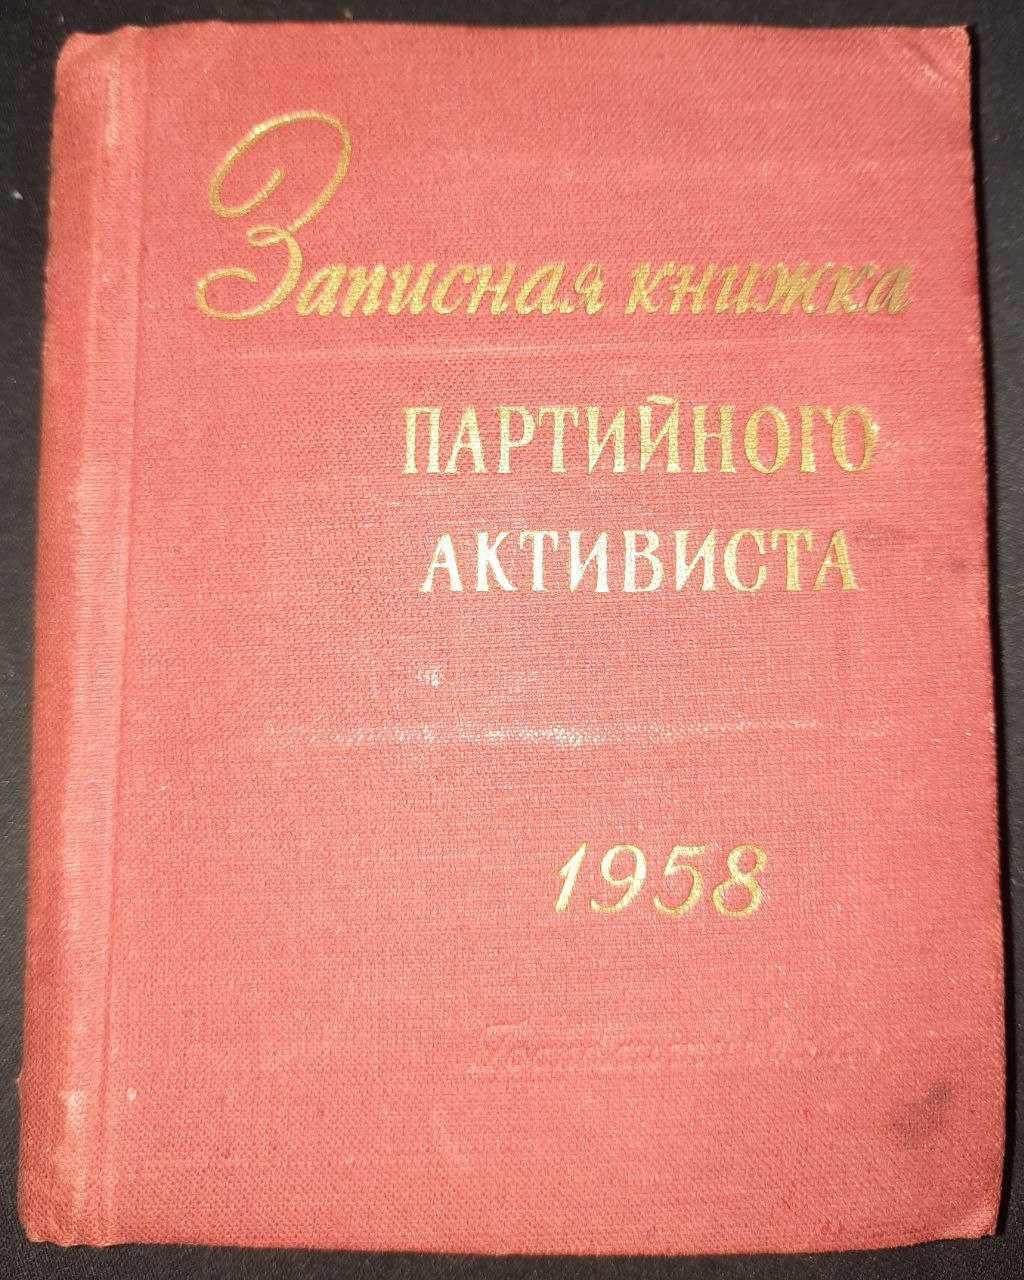 Записная книжка партийного активиста 1958 год